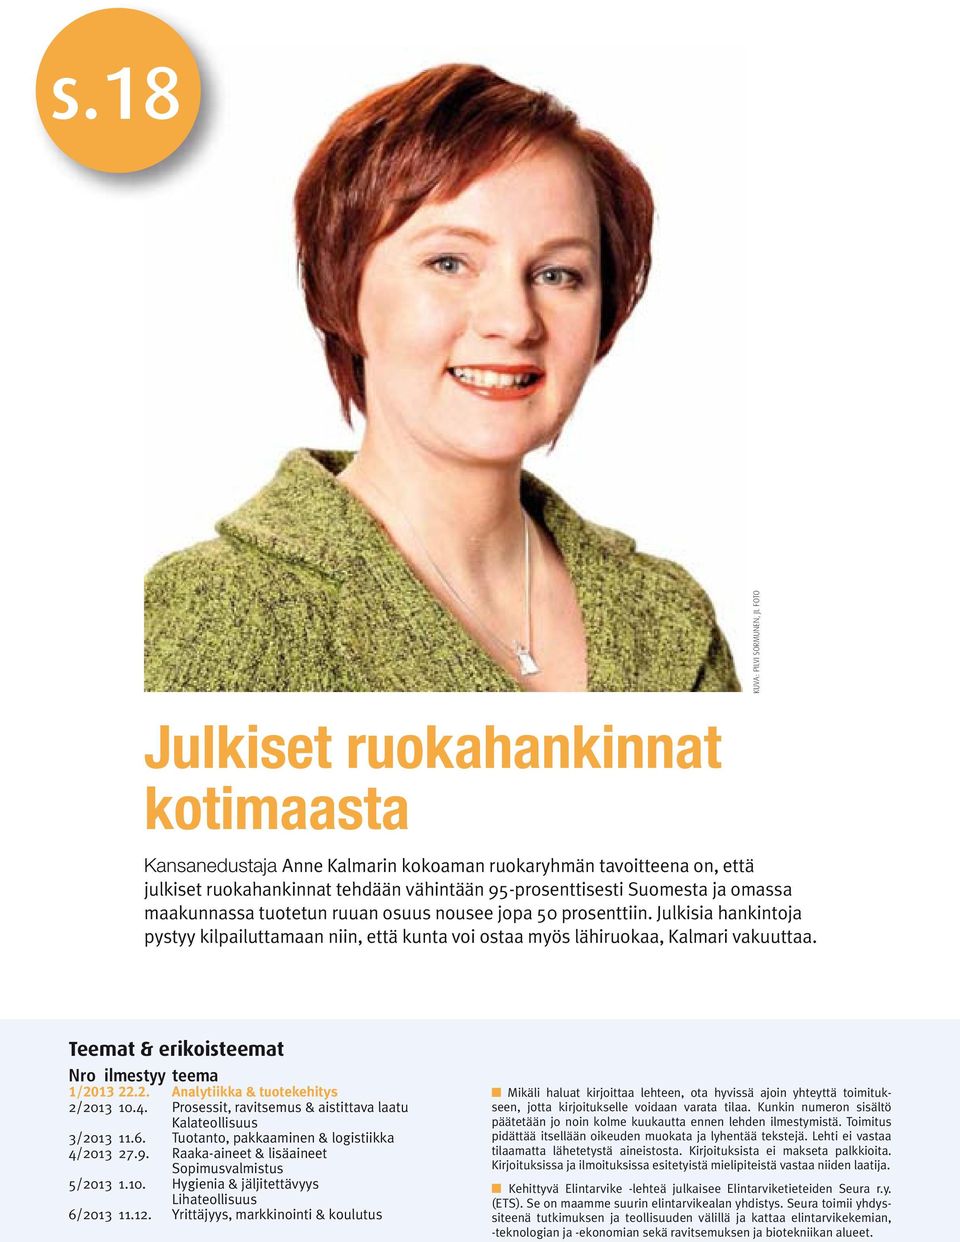 Julkisia hankintoja pystyy kilpailuttamaan niin, että kunta voi ostaa myös lähiruokaa, Kalmari vakuuttaa. Teemat & erikoisteemat Nro ilmestyy teema 1/2013 22.2. Analytiikka & tuotekehitys 2/2013 10.4.